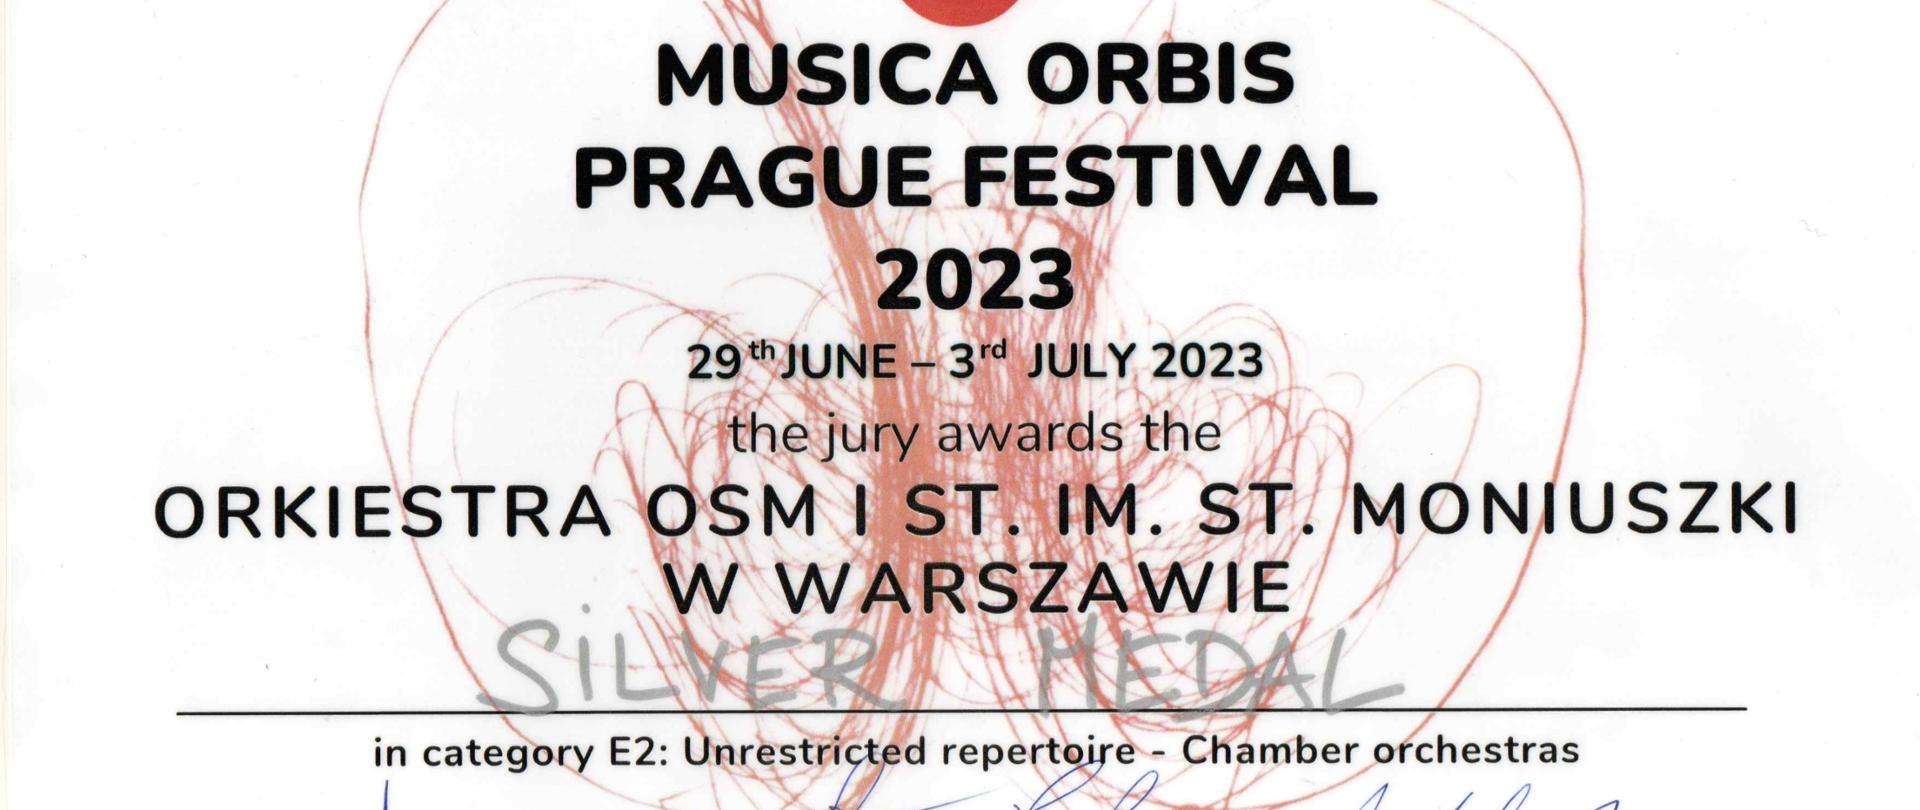 Na zdjęciu nazwa festiwalu, data festiwalu, nazwa orkiestry, potwierdzenie otrzymania srebrnego medalu